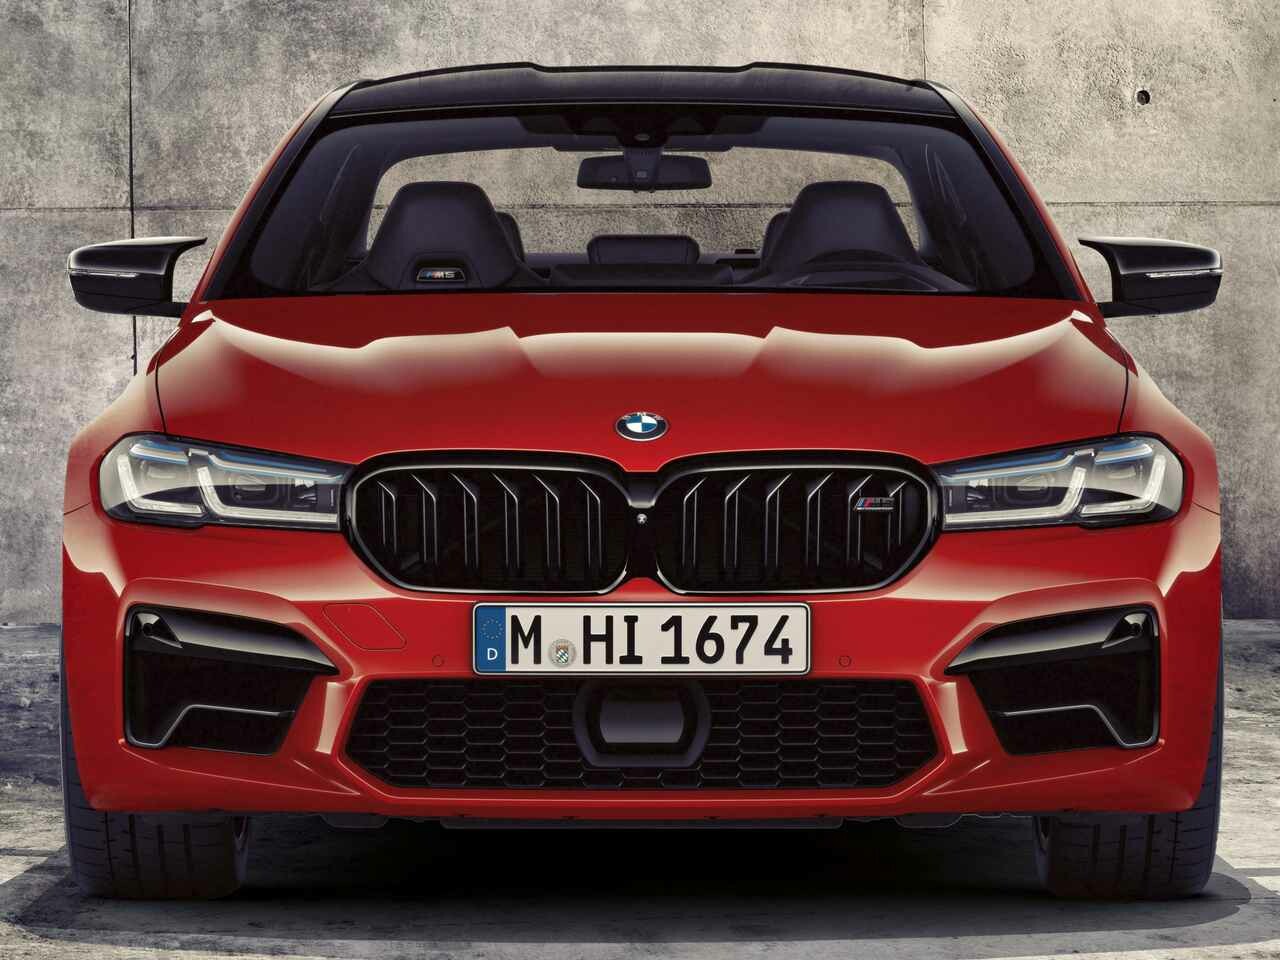 BMW M5がマイナーチェンジと欧州で発表。M8のショックアブソーバー採用などで高性能化